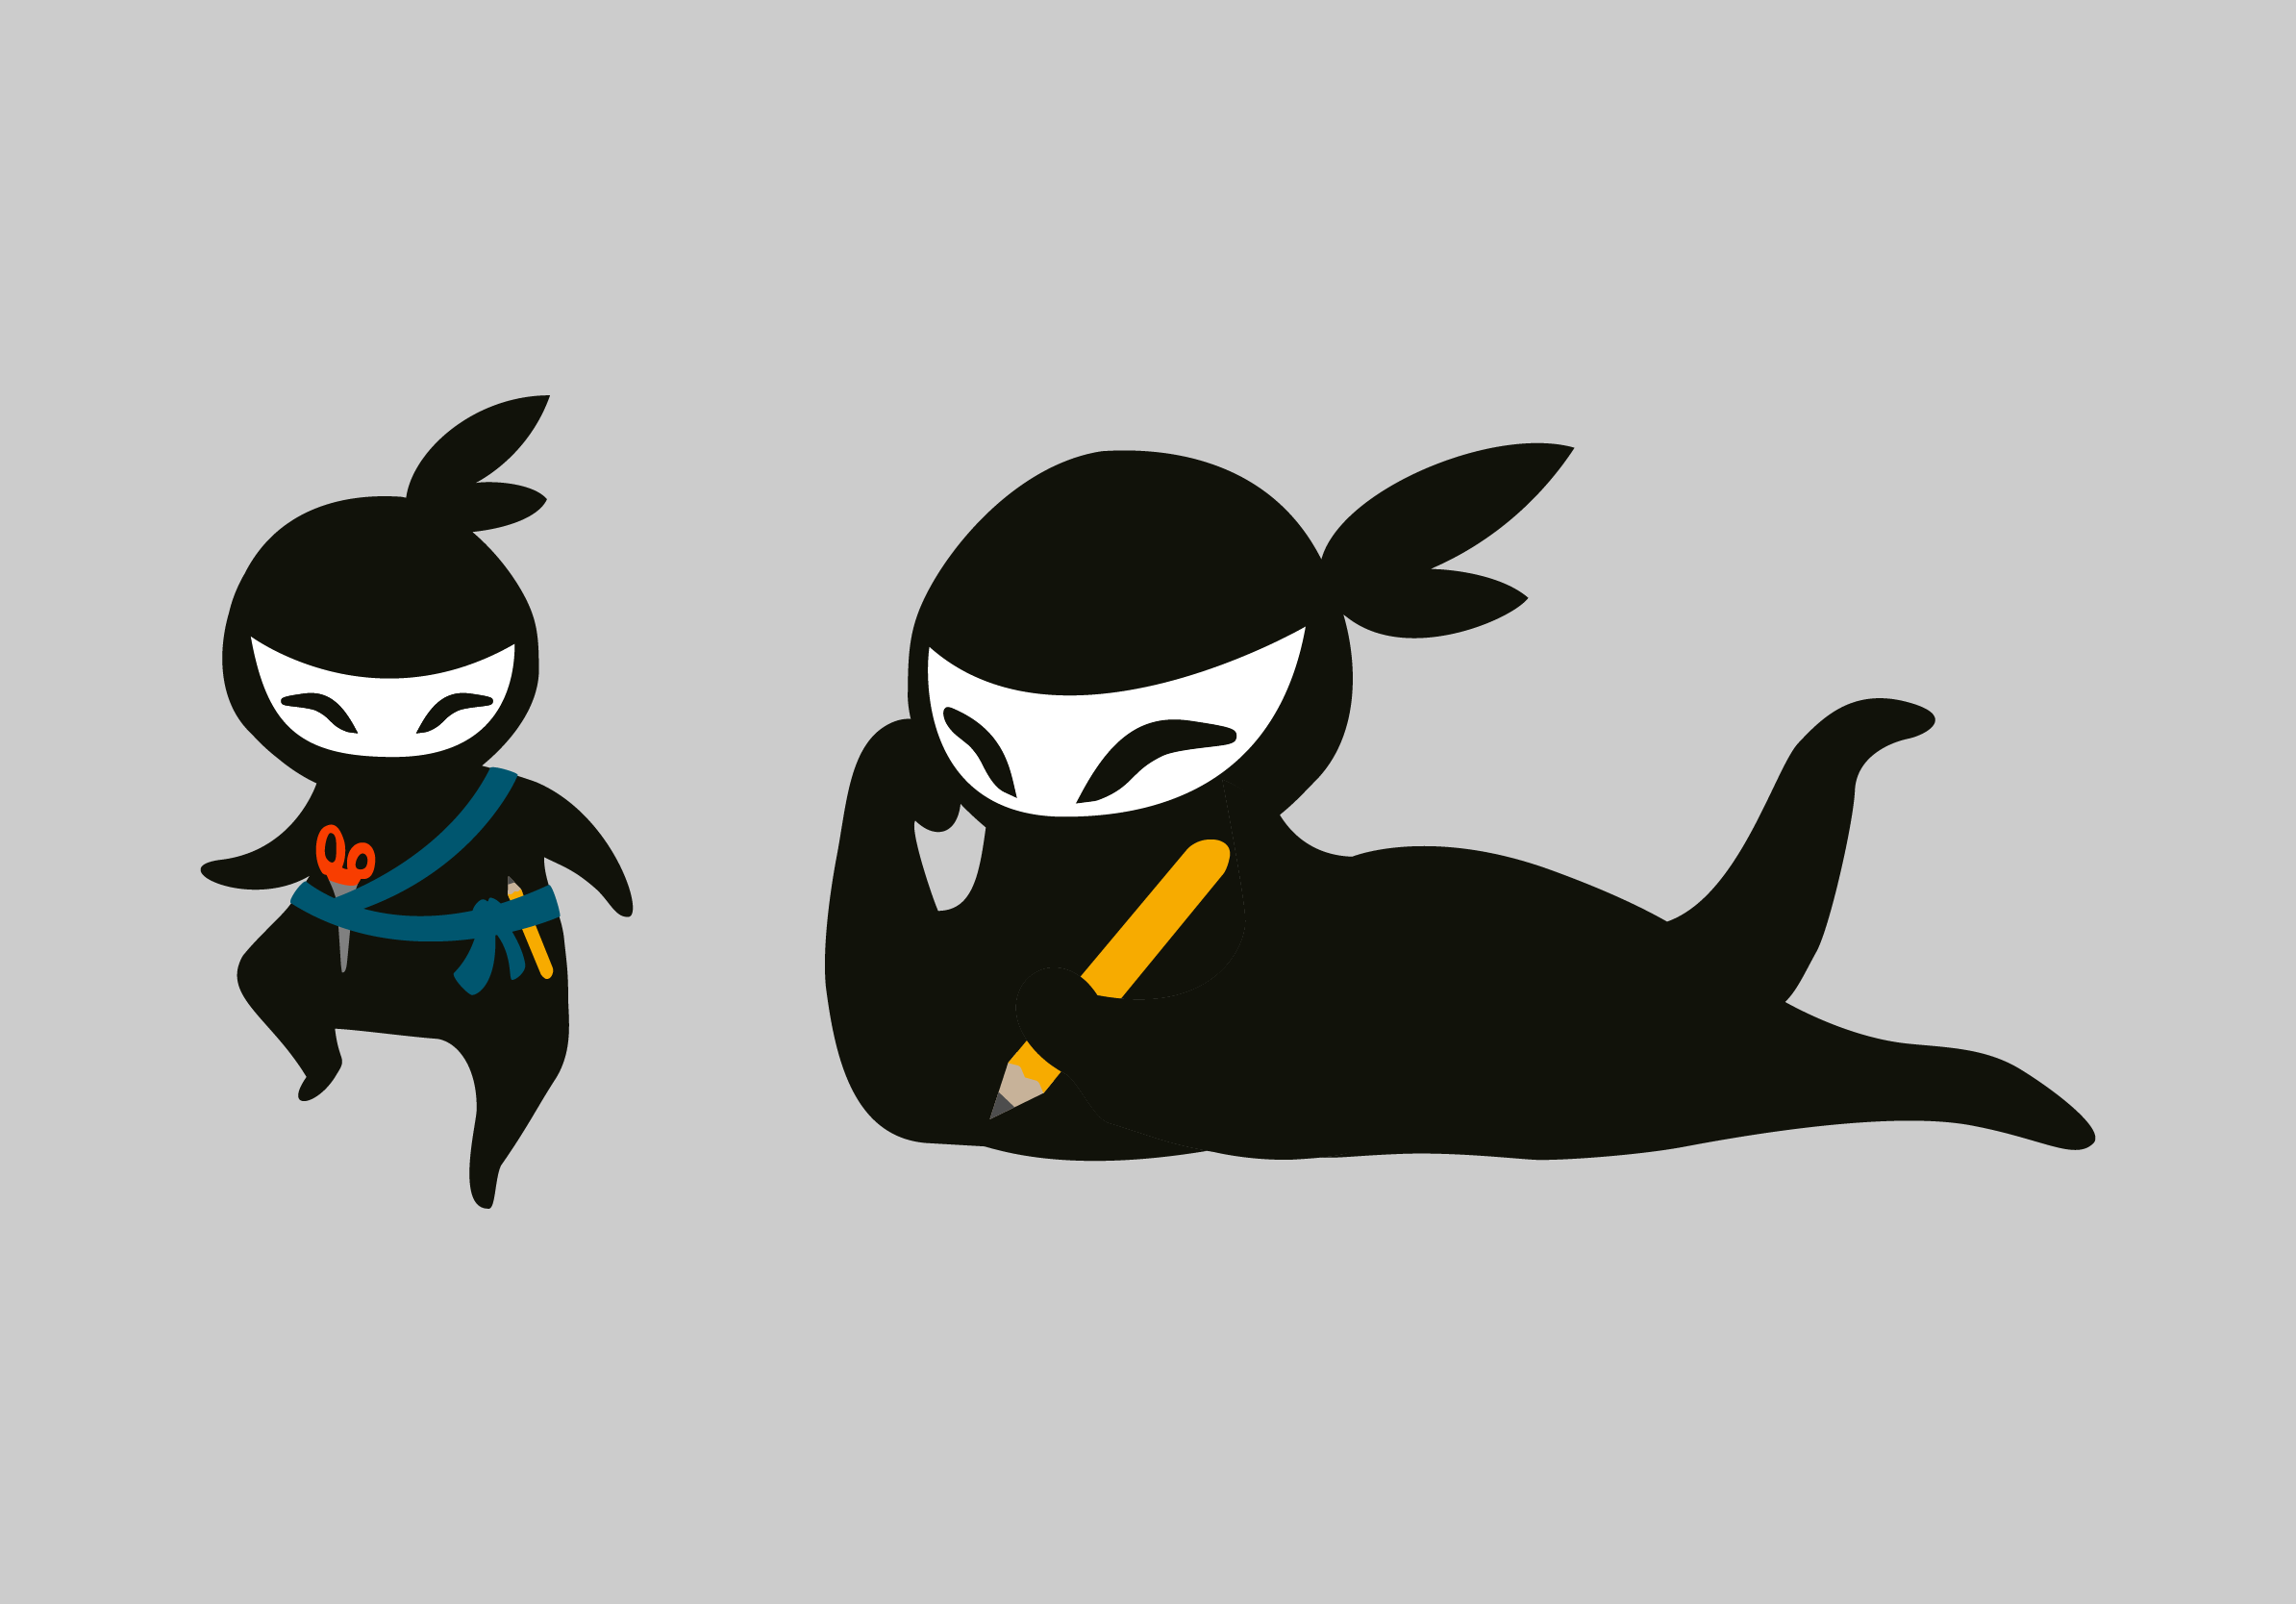 ninja2